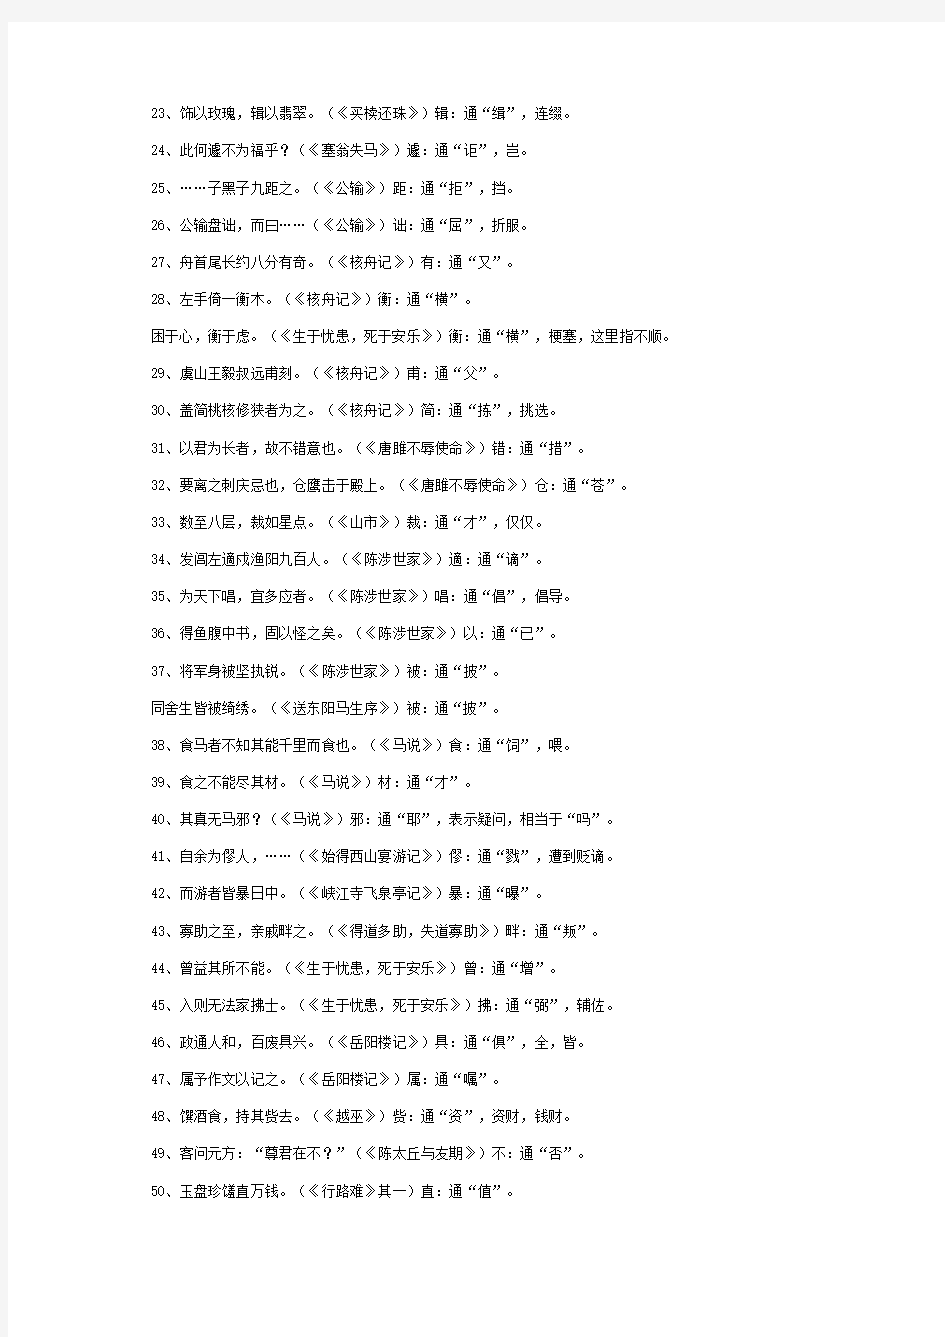 初中语文1-6册文言文知识点归纳